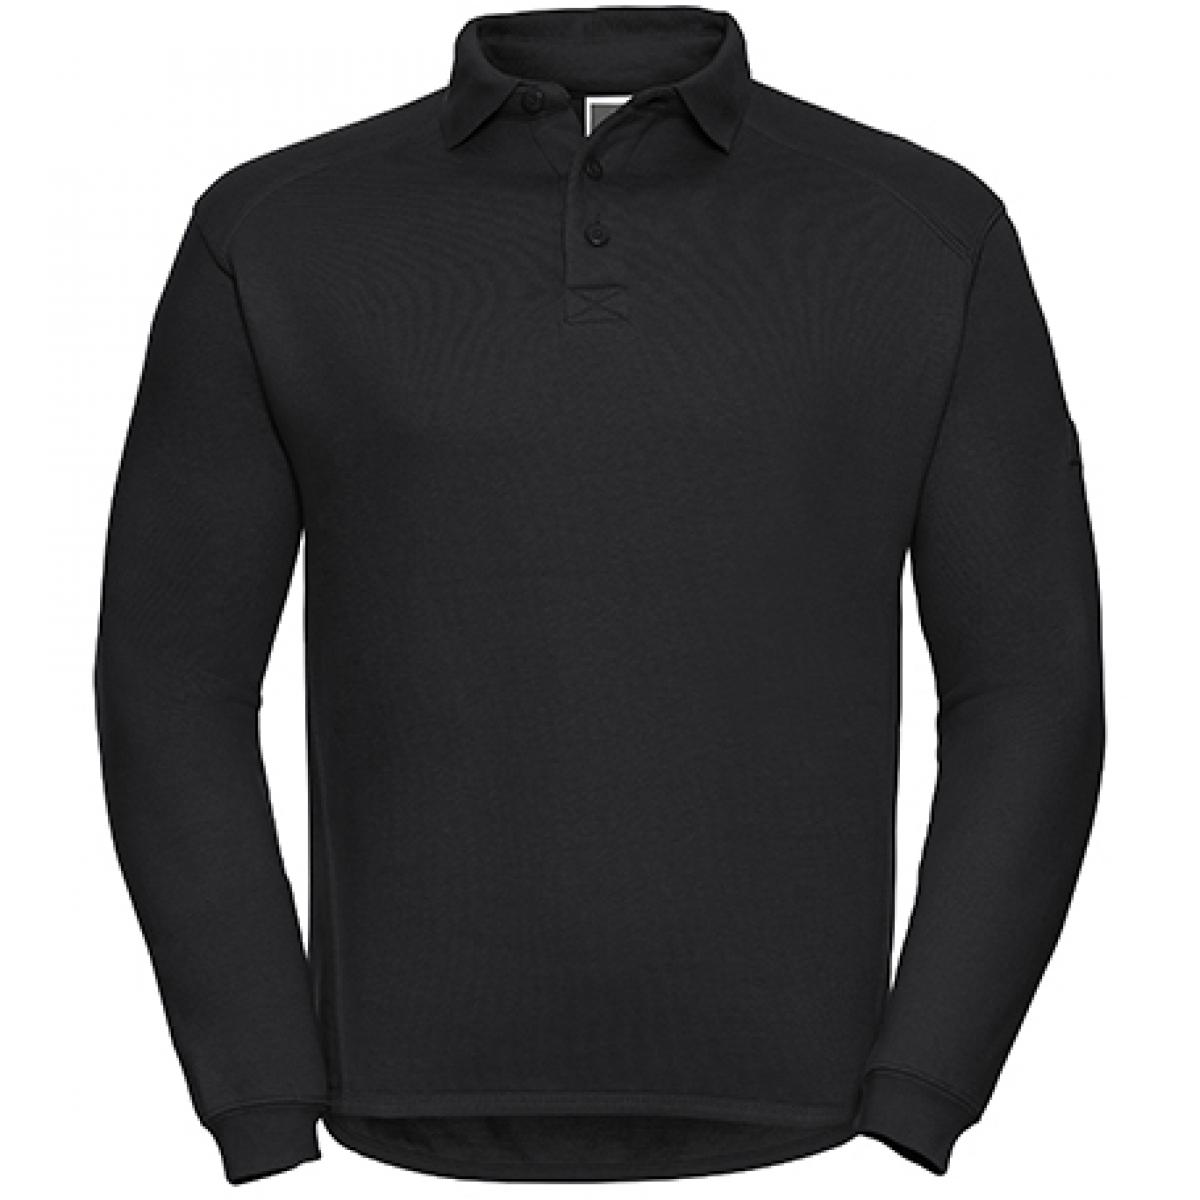 Hersteller: Russell Herstellernummer: R-012M-0 Artikelbezeichnung: Herren Workwear-Poloshirt - Waschbar bis 60 °C - bis 4XL Farbe: Black